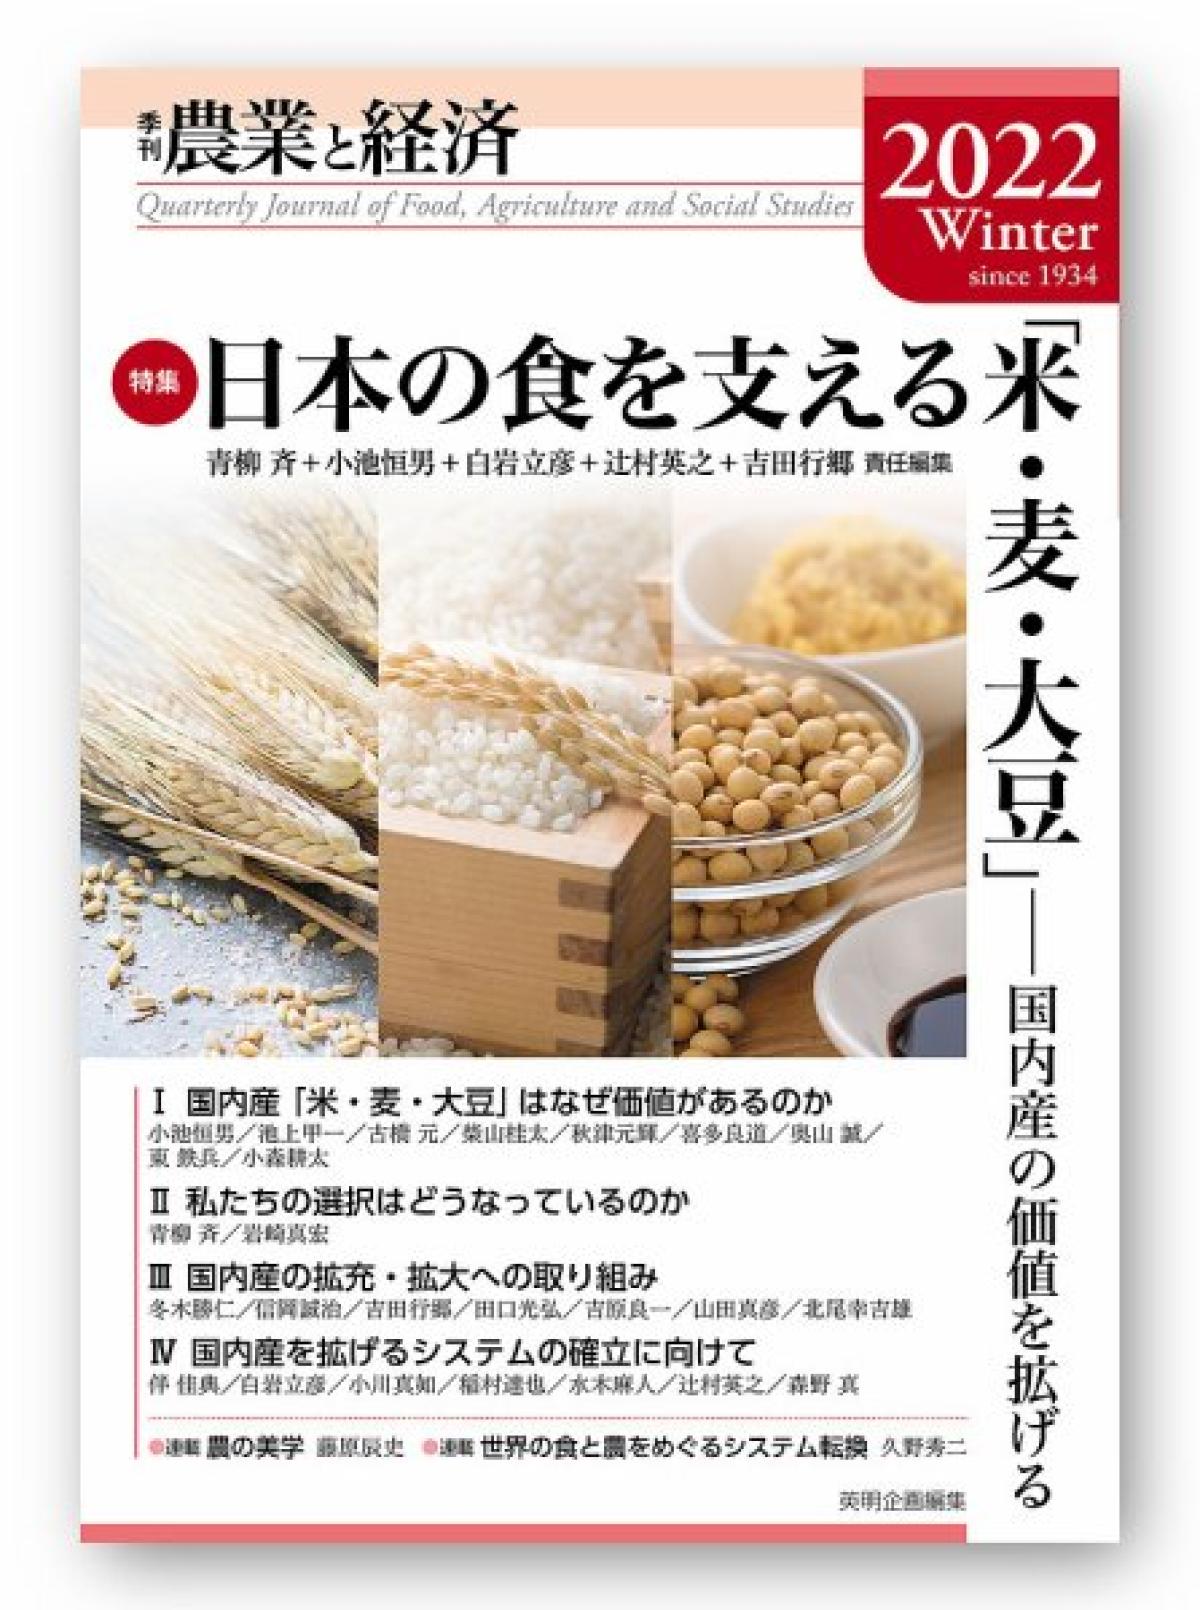 英明企画編集発行の季刊誌「農業と経済 2022年冬号」にて栄養コンシェルジュ®がお米の価値について執筆しました！